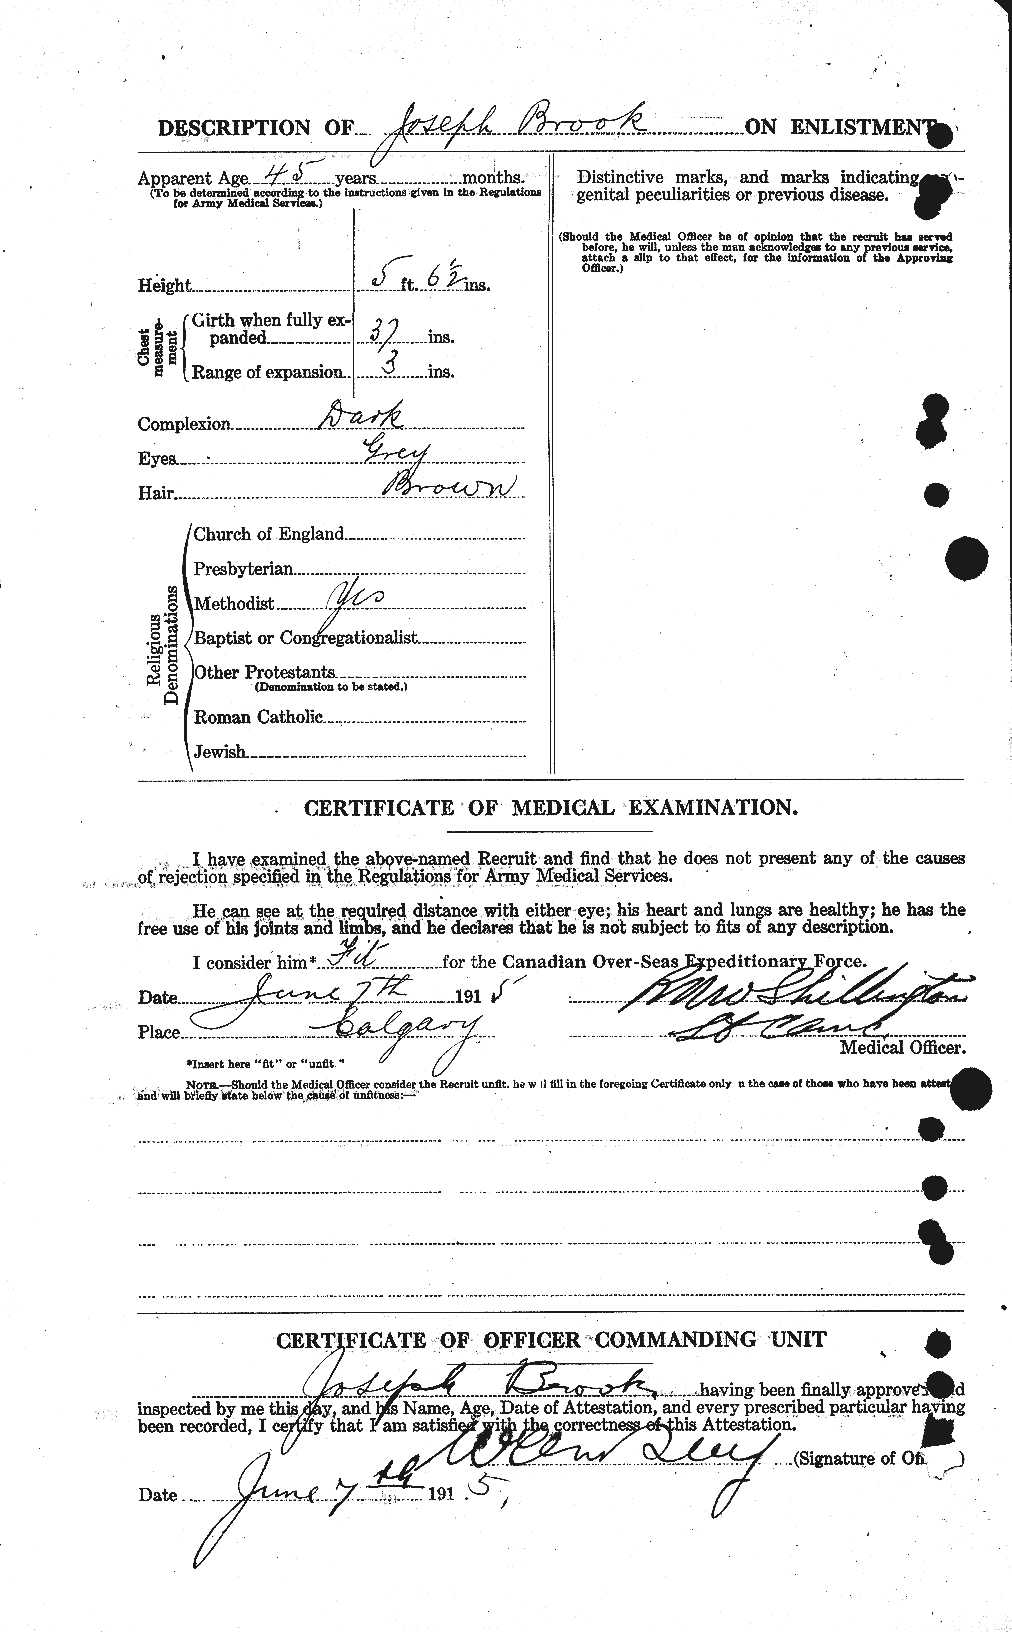 Dossiers du Personnel de la Première Guerre mondiale - CEC 262261b